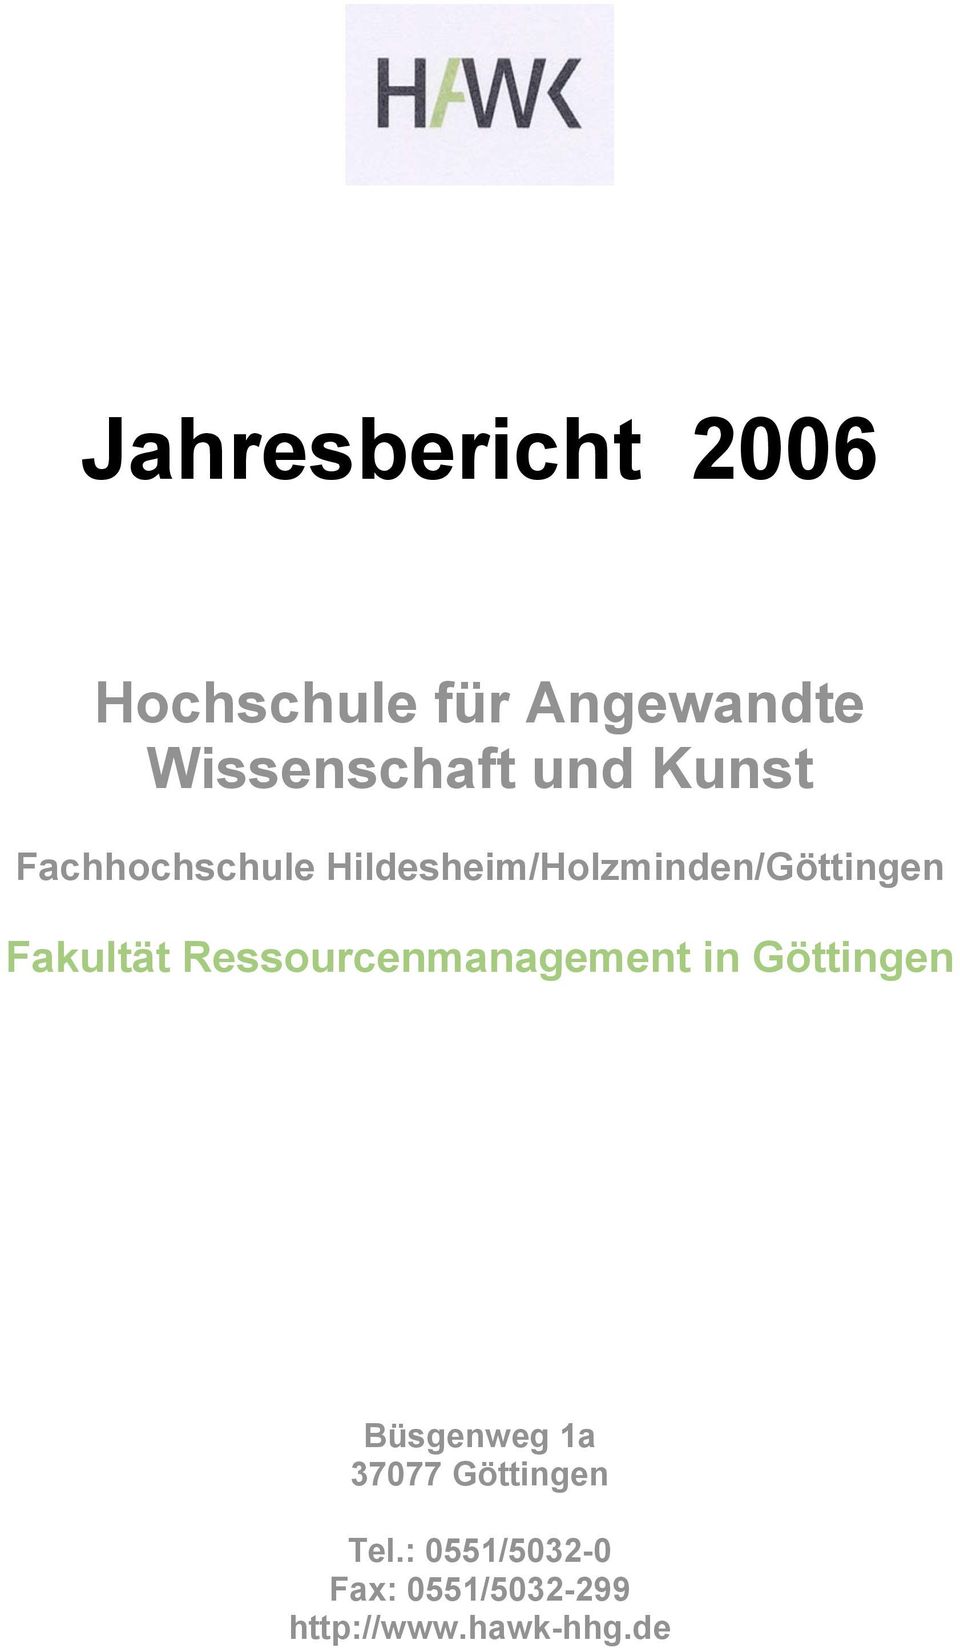 Ressourcenmanagement in Göttingen Büsgenweg 1a 37077